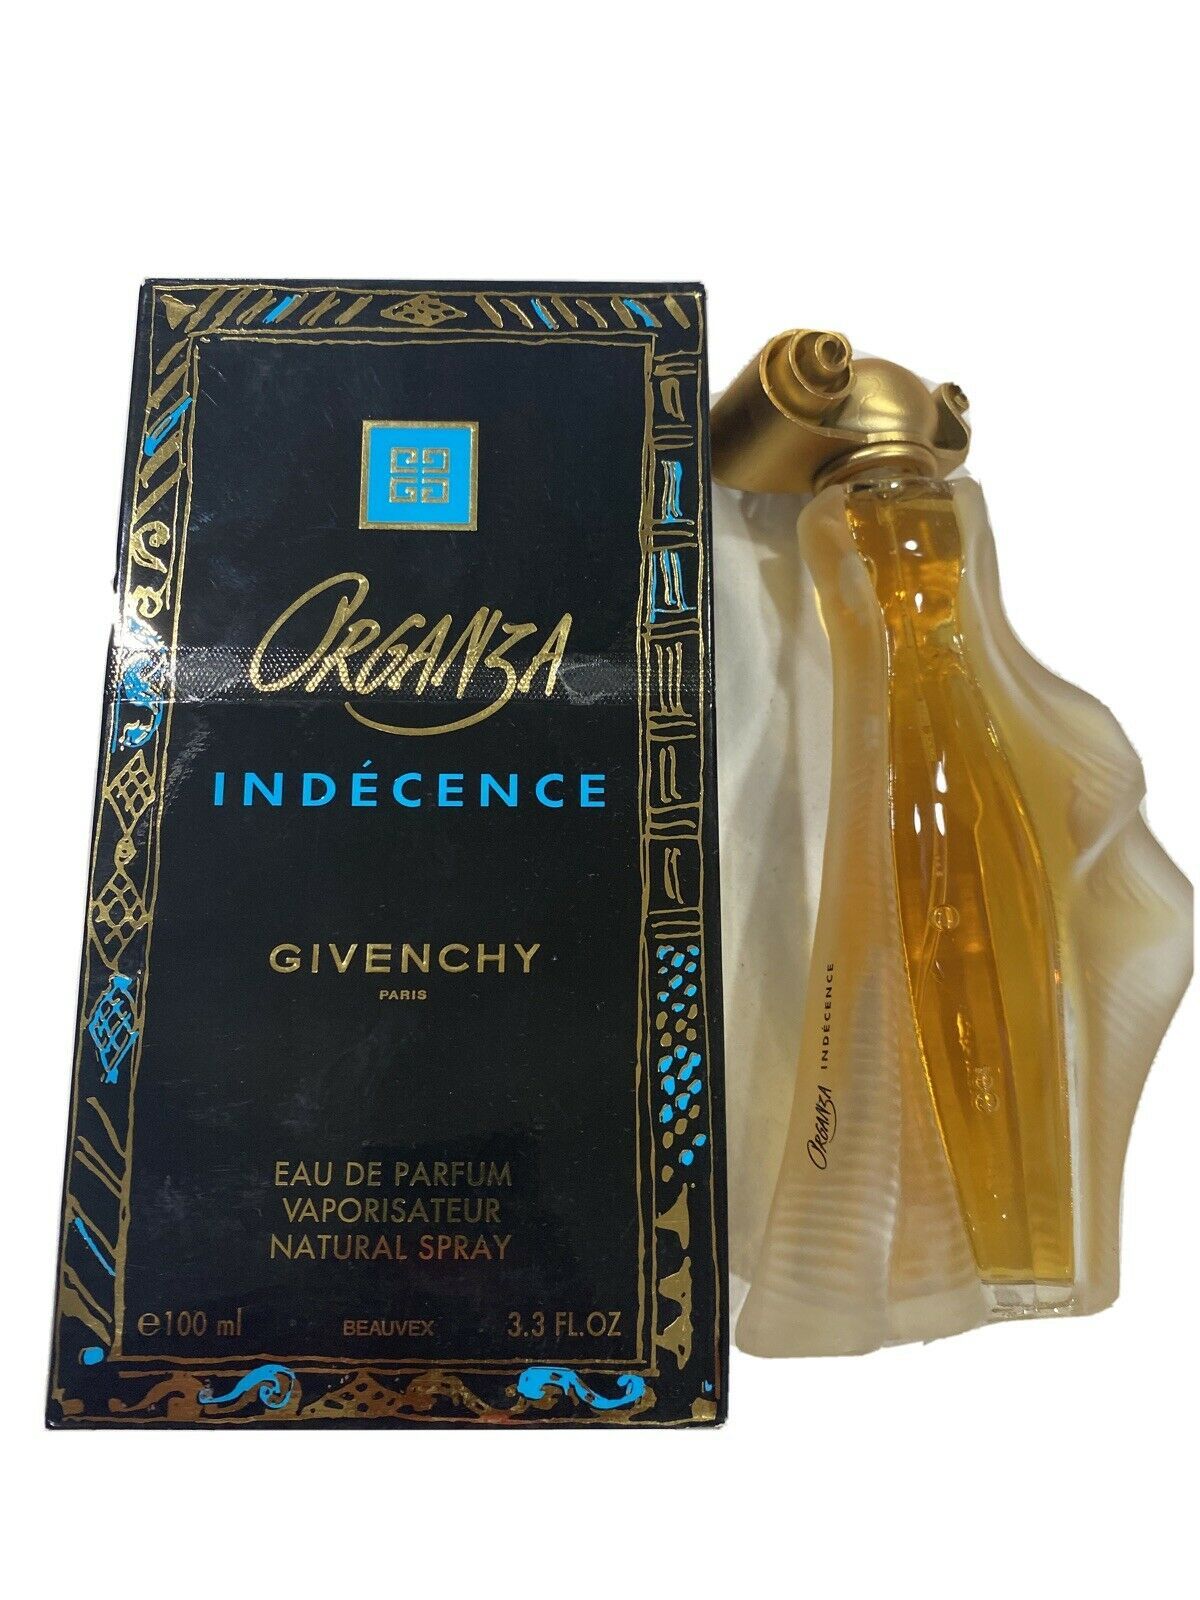 Aaaaaagivenchy organza indecence 3.3 edp perfume